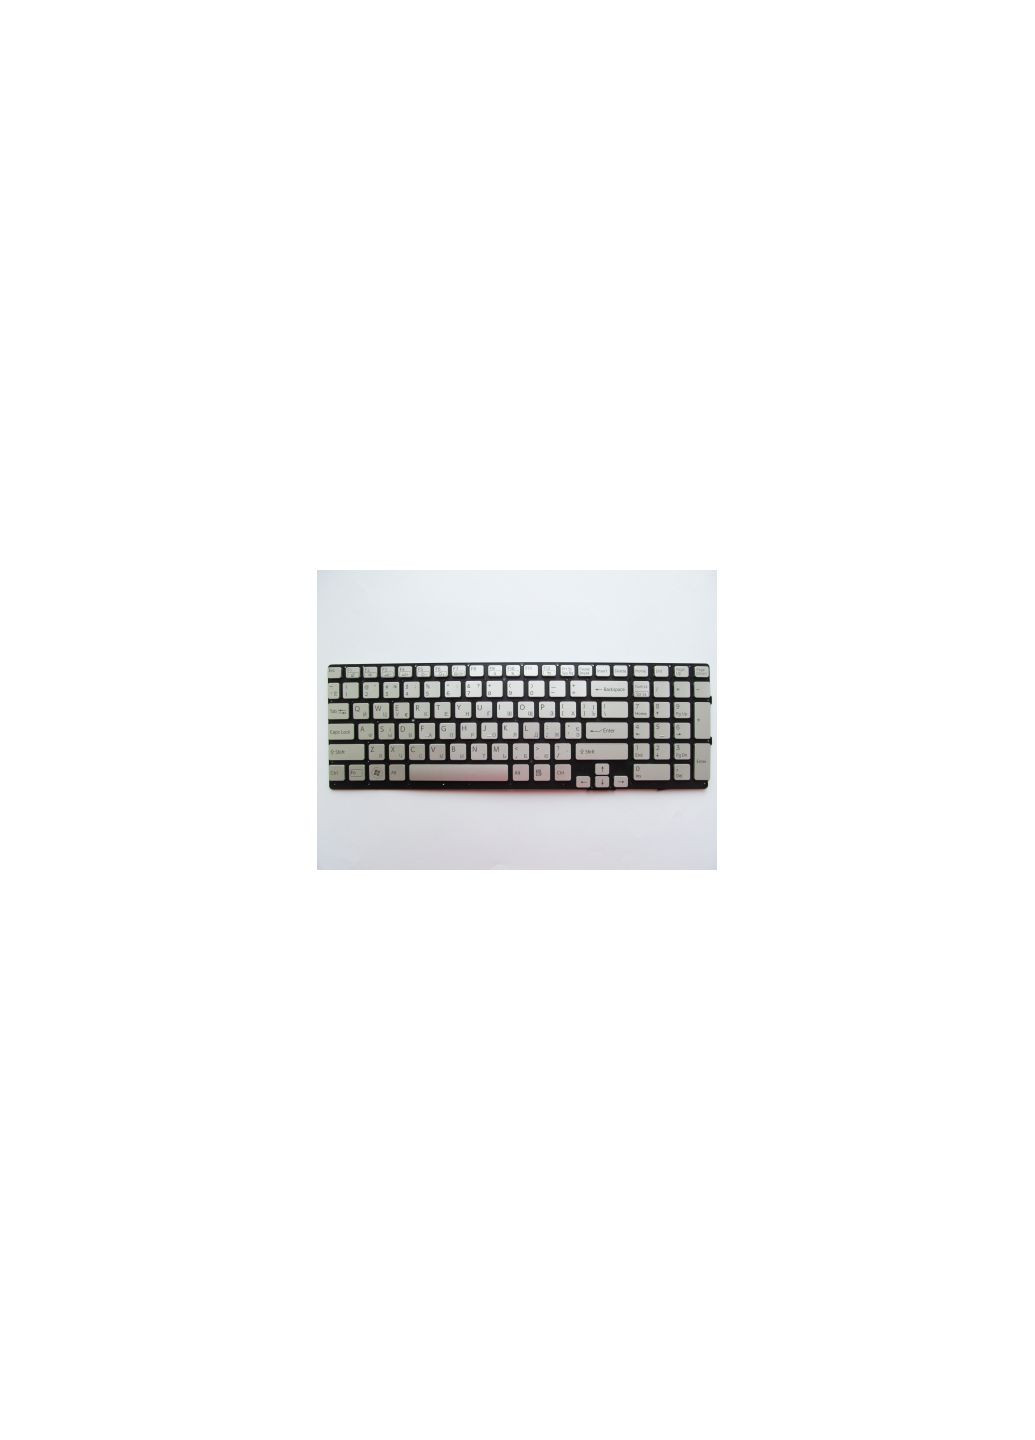 Клавиатура ноутбука VPCSE Series серебро без рамки подсветка UA (A43274) Sony vpc-se series серебро без рамки подсветка ua (276707373)